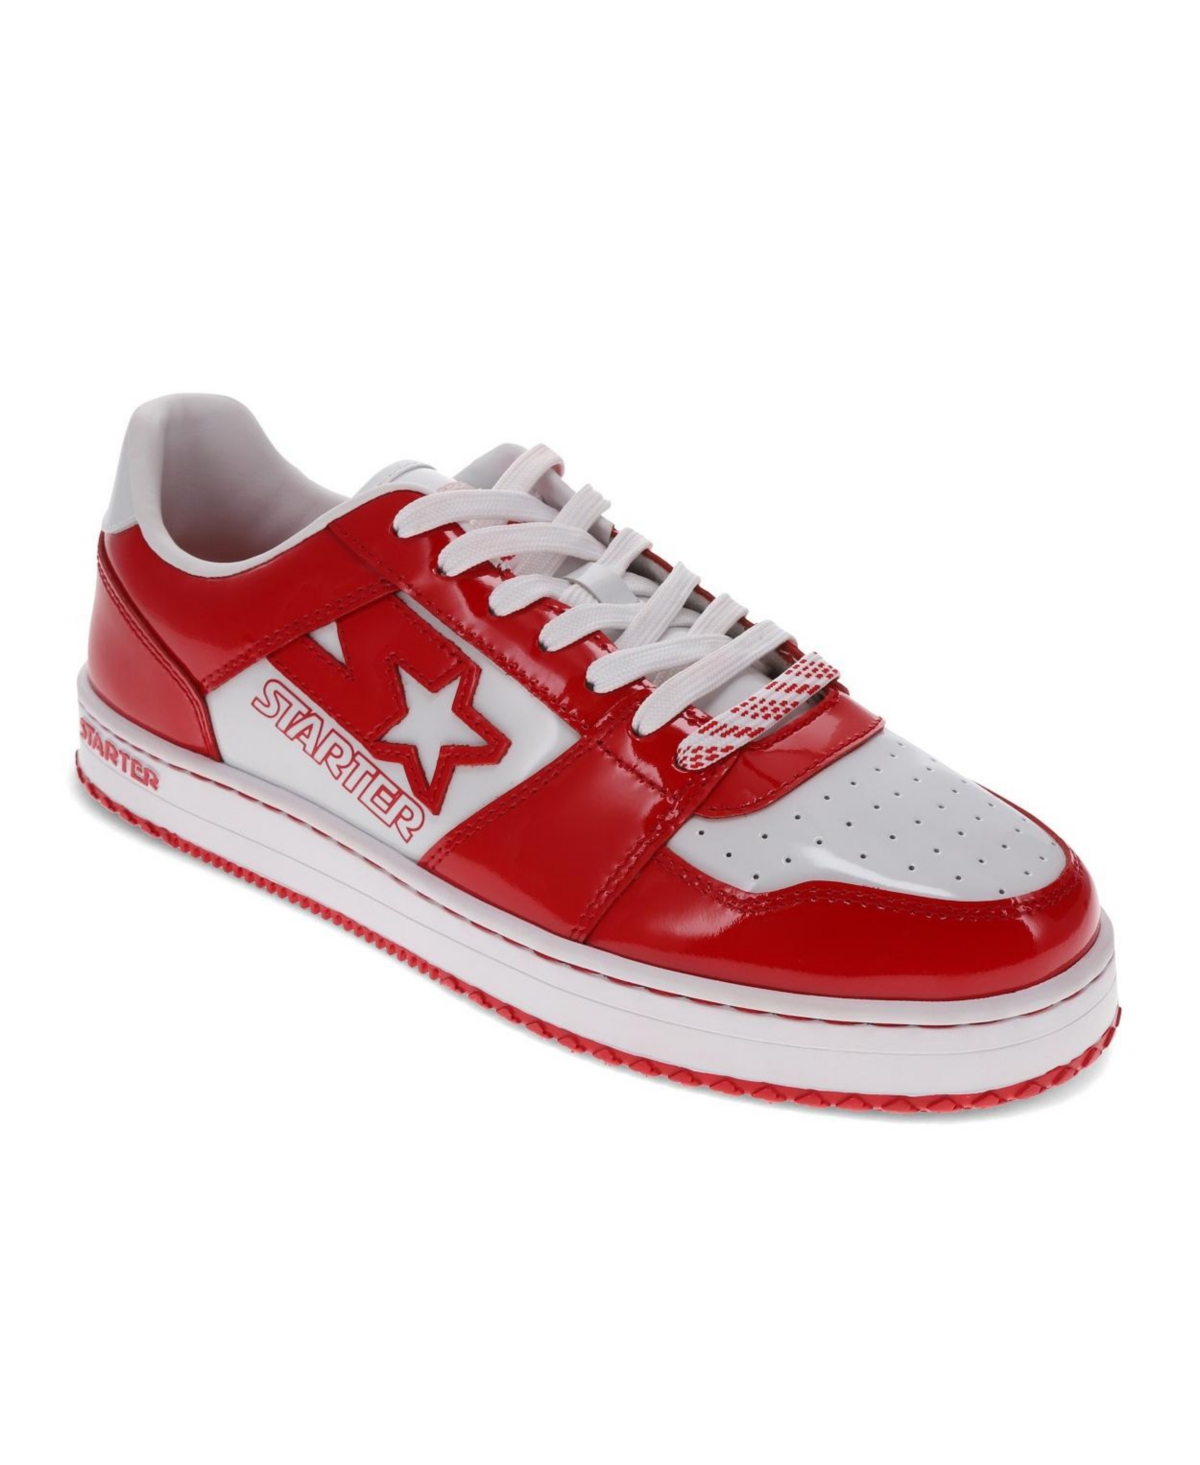 Starter Men's Lfs 1 Tm Sneaker In Red,white